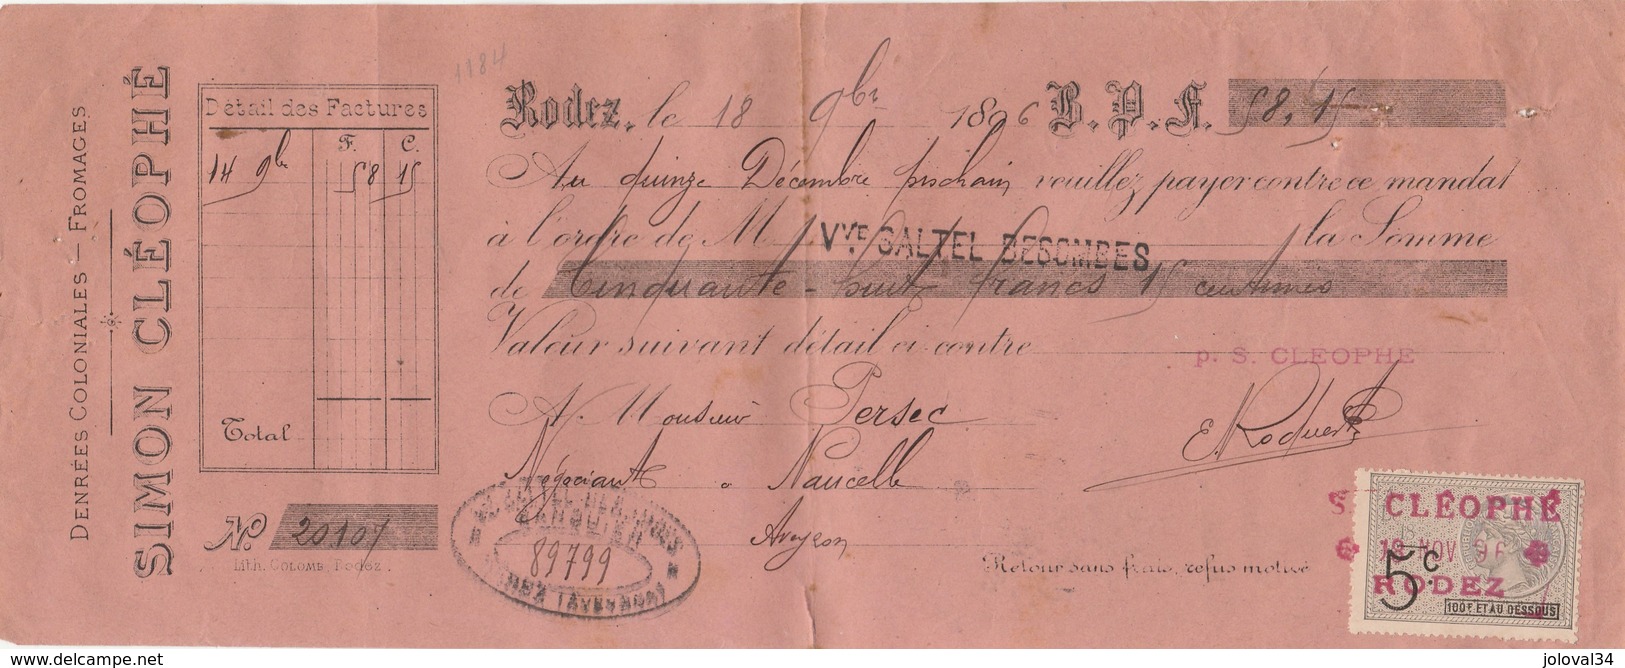 Lettre Change 18/11/1896 Simon CLEOPHE Fromages Denrées Coloniales RODEZ Aveyron - Persec Naucelle - Timbre Fiscal - Lettres De Change